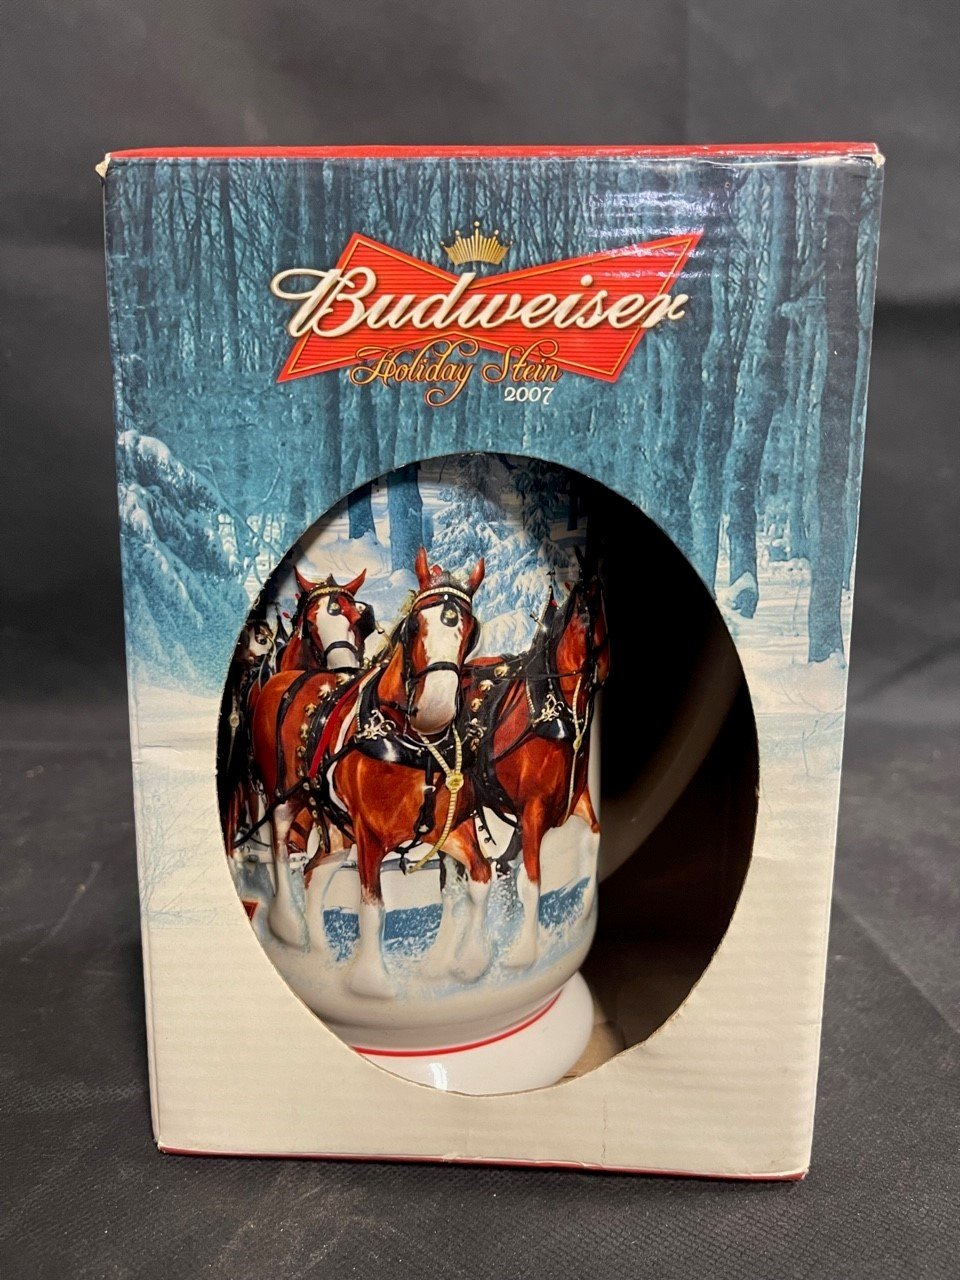 Vintage 2007 Budweiser Winters Calm Holiday Stein Mug w/ Box